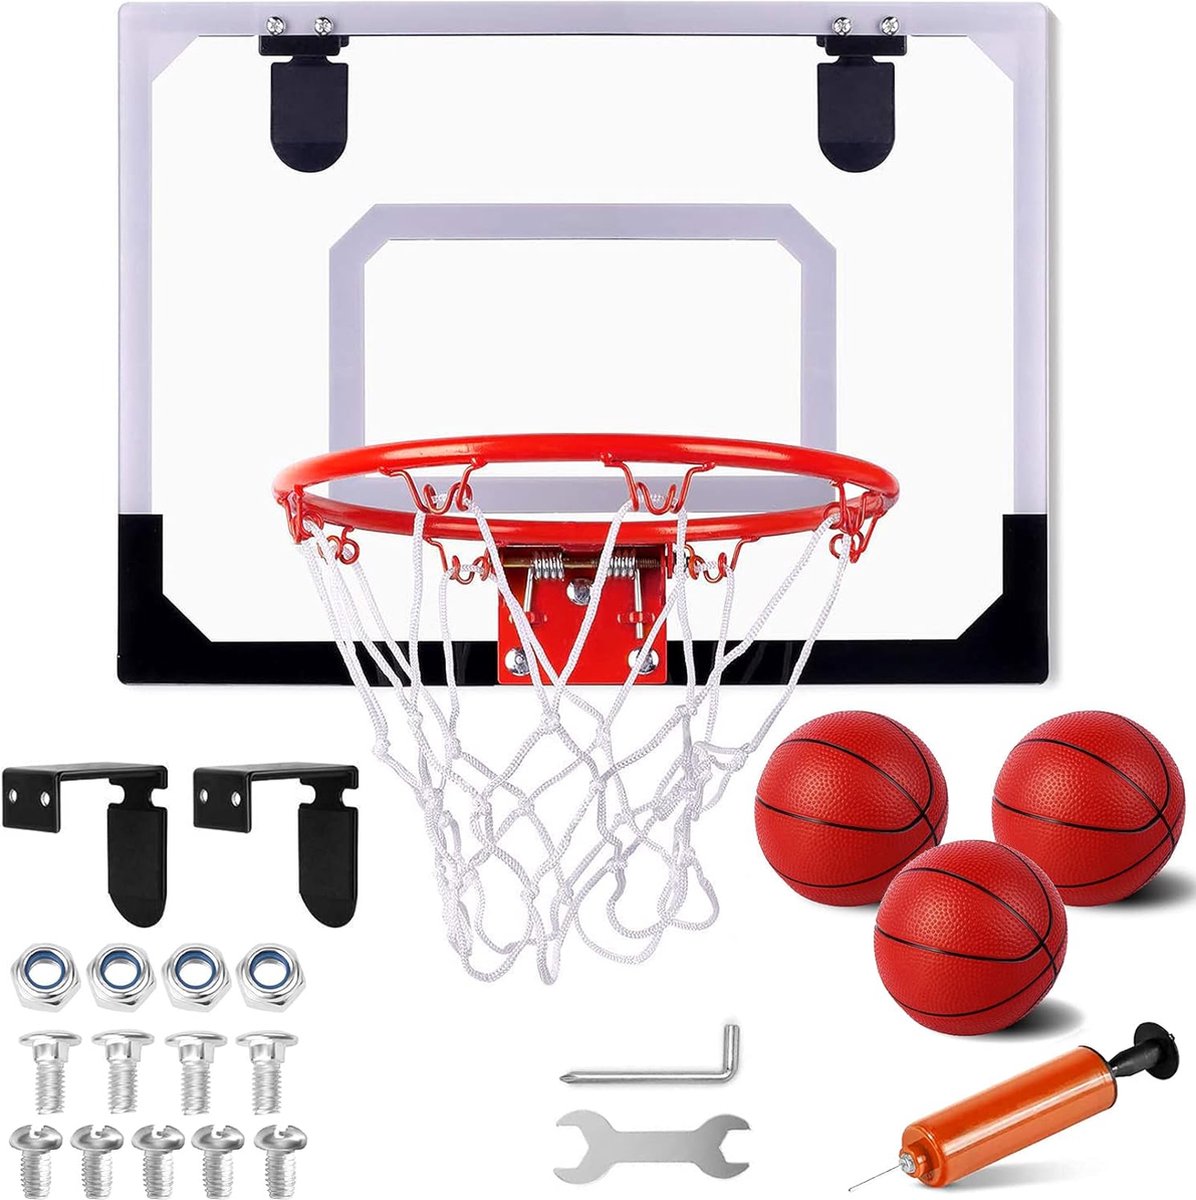 Basketbalkorf voor Volwassenen - Verstelbare Hoogte - Duurzame Constructie - Inclusief Basketbal - Indoor/Outdoor Basketbal Set - Sportcadeau Optie - Ayangoods